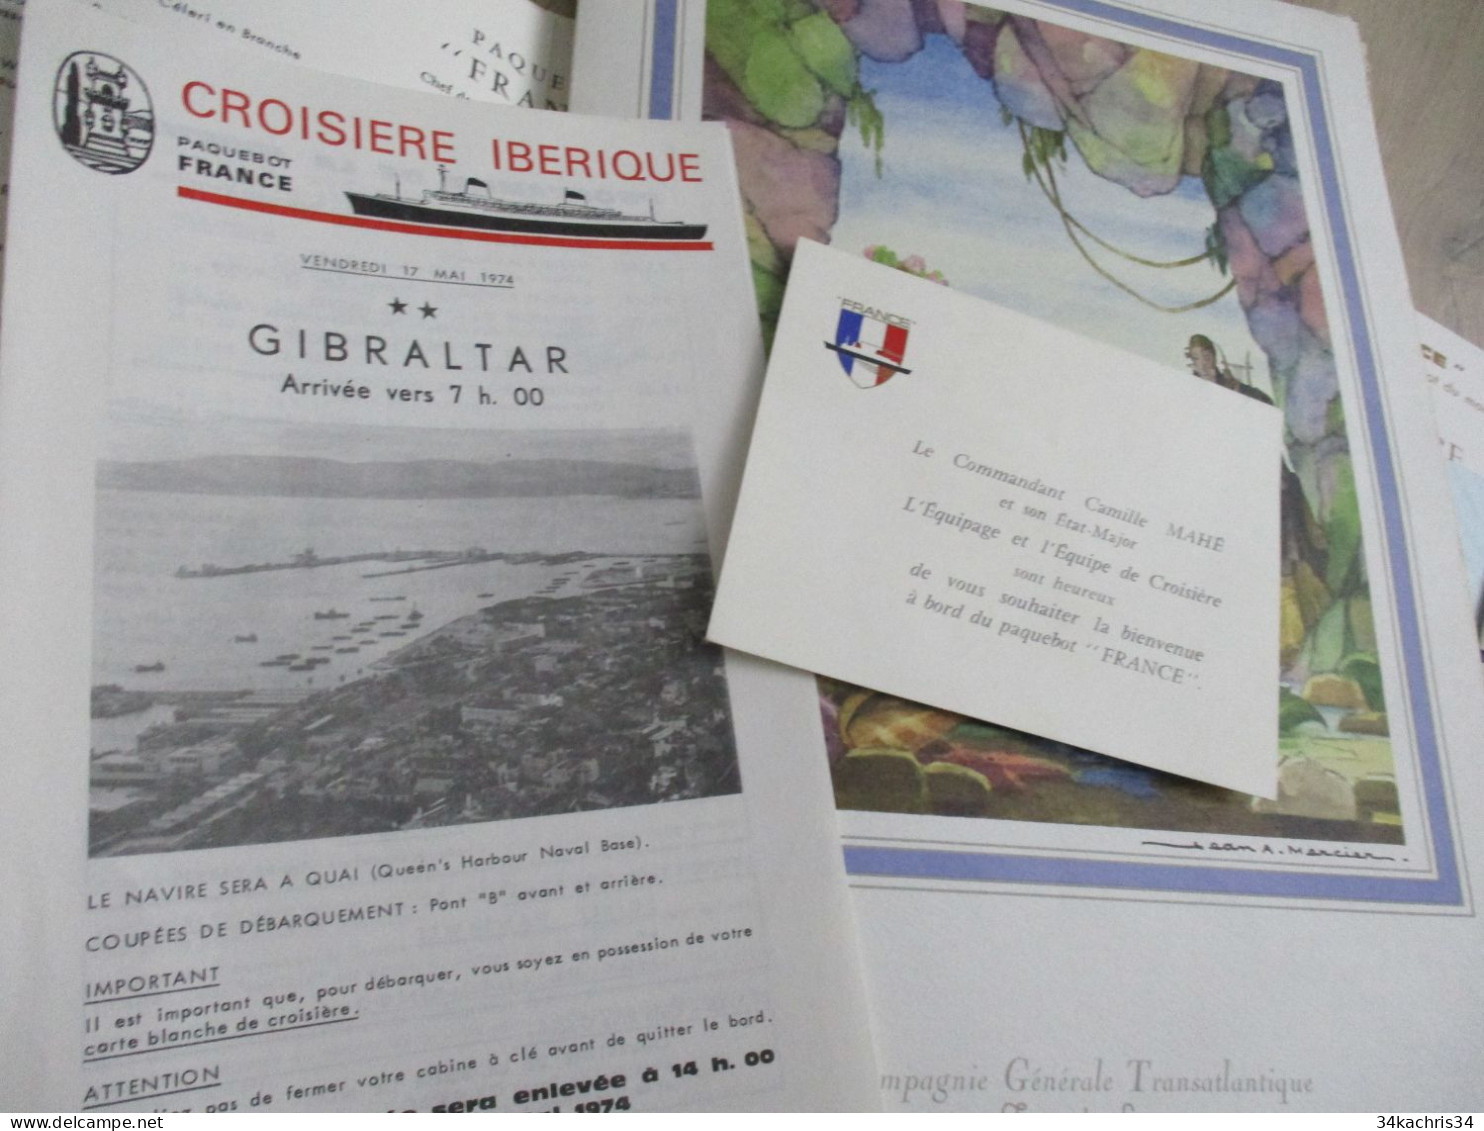 Paquebot France archive documents commerciaux pub publicité menus programme cinéma..... envoi colissimo voir photos